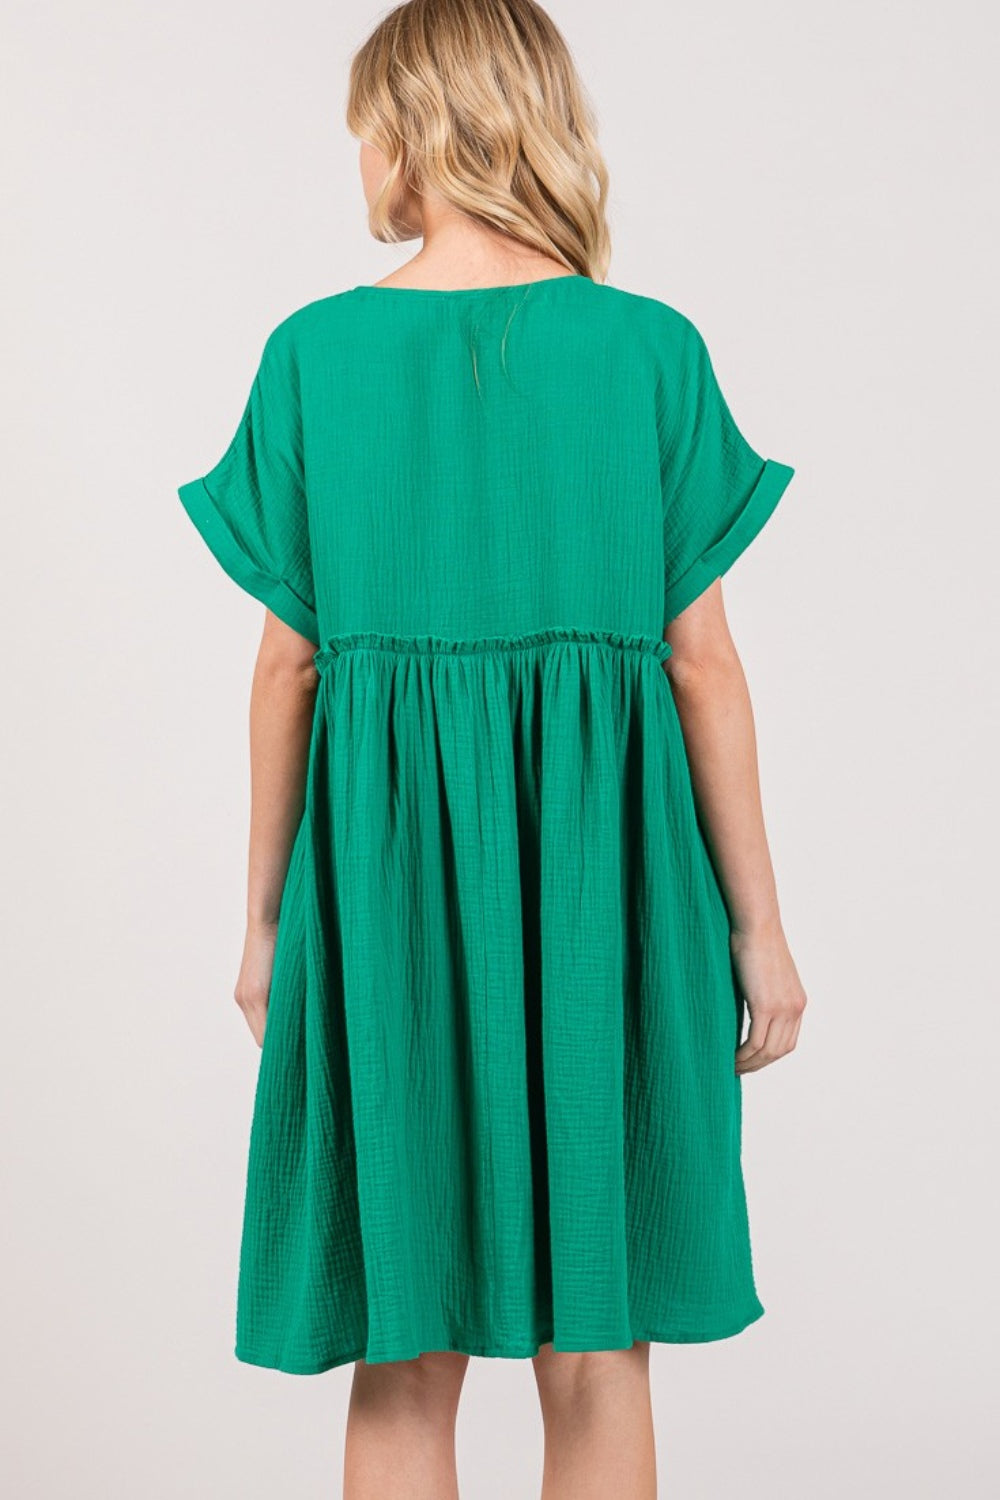 TEEK - Kelly Green Button Up Short Sleeve Dress DRESS TEEK Trend   